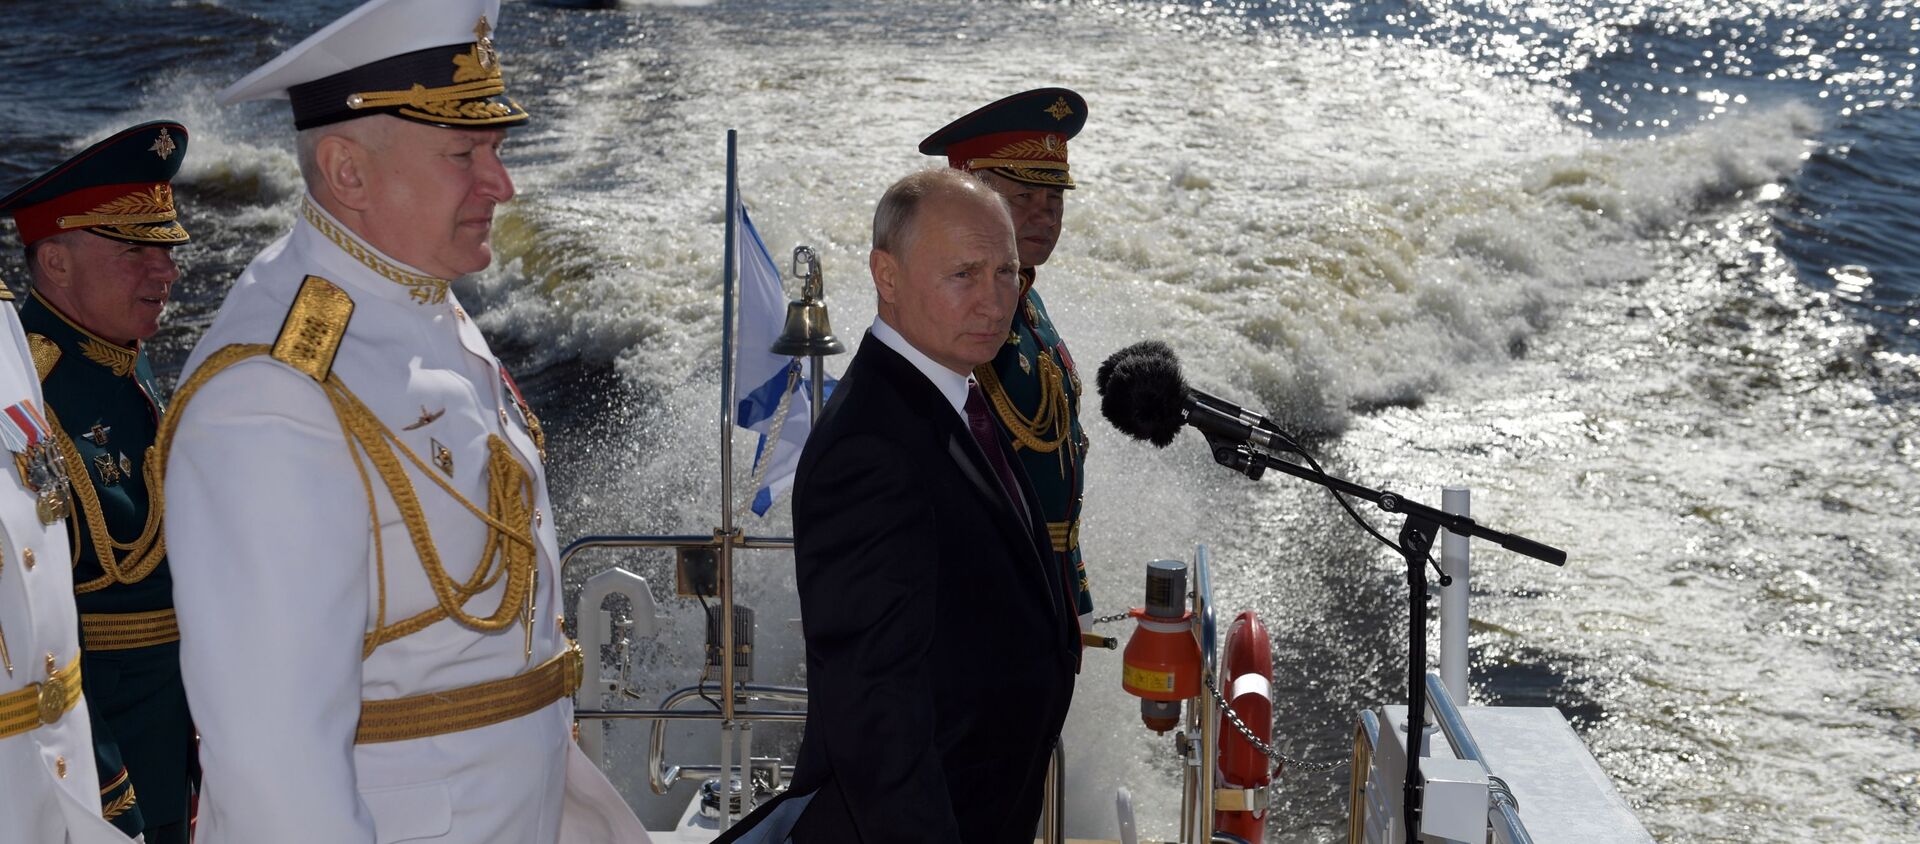 Tổng thống Nga, Tổng tư lệnh tối cao Vladimir Putin chào đón những người tham gia cuộc diễu hành hải quân chính nhân dịp Ngày của Hải quân Nga trên con đường Kronstadt ở Vịnh Phần Lan - Sputnik Việt Nam, 1920, 31.07.2020